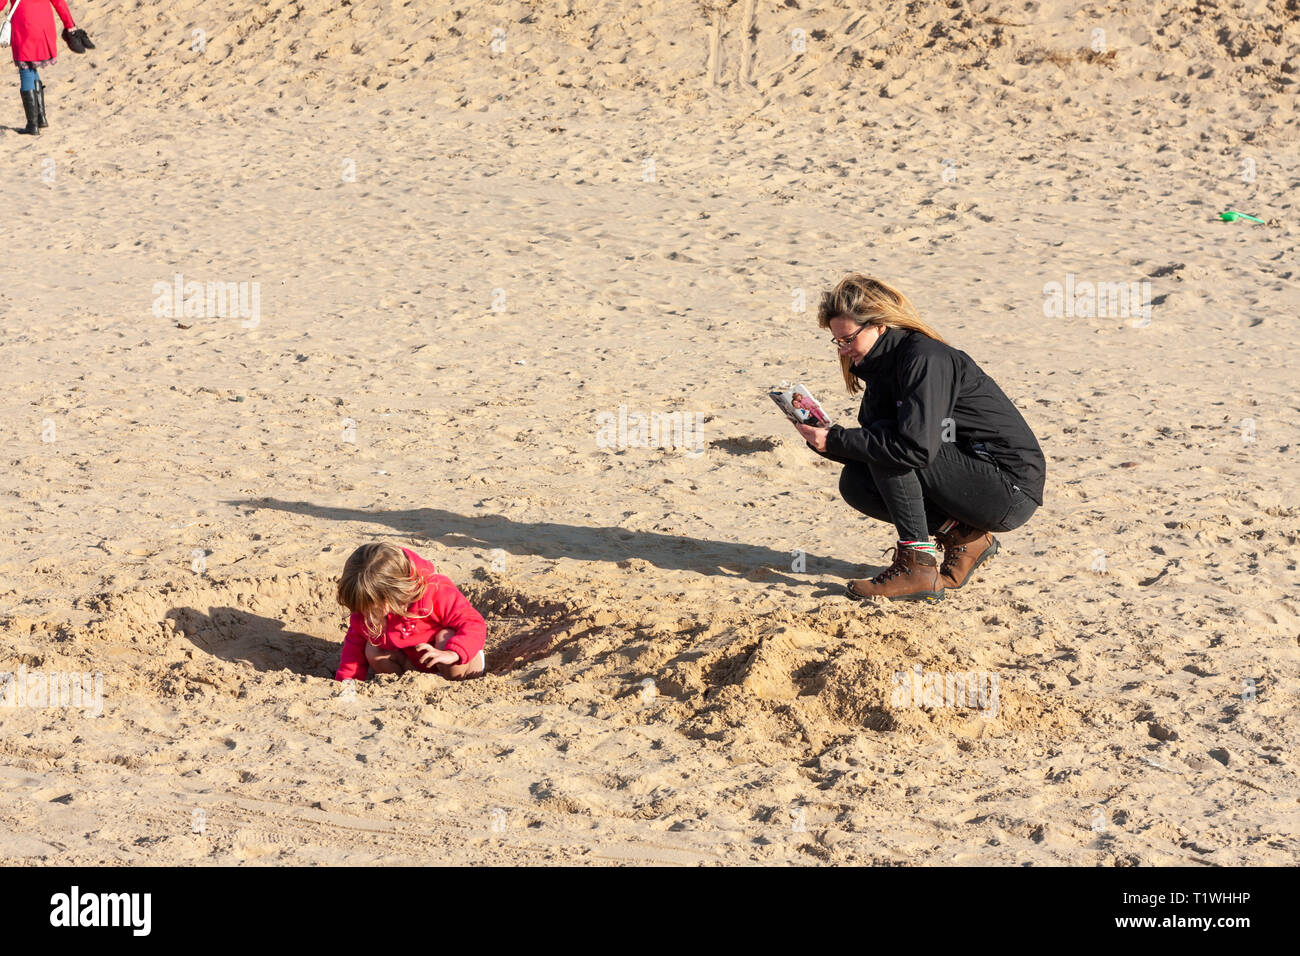 Ein Erwachsener ein Bild von einem jungen Mädchen spielen im Sand auf Formby Strand, Merseyside, UK Stockfoto